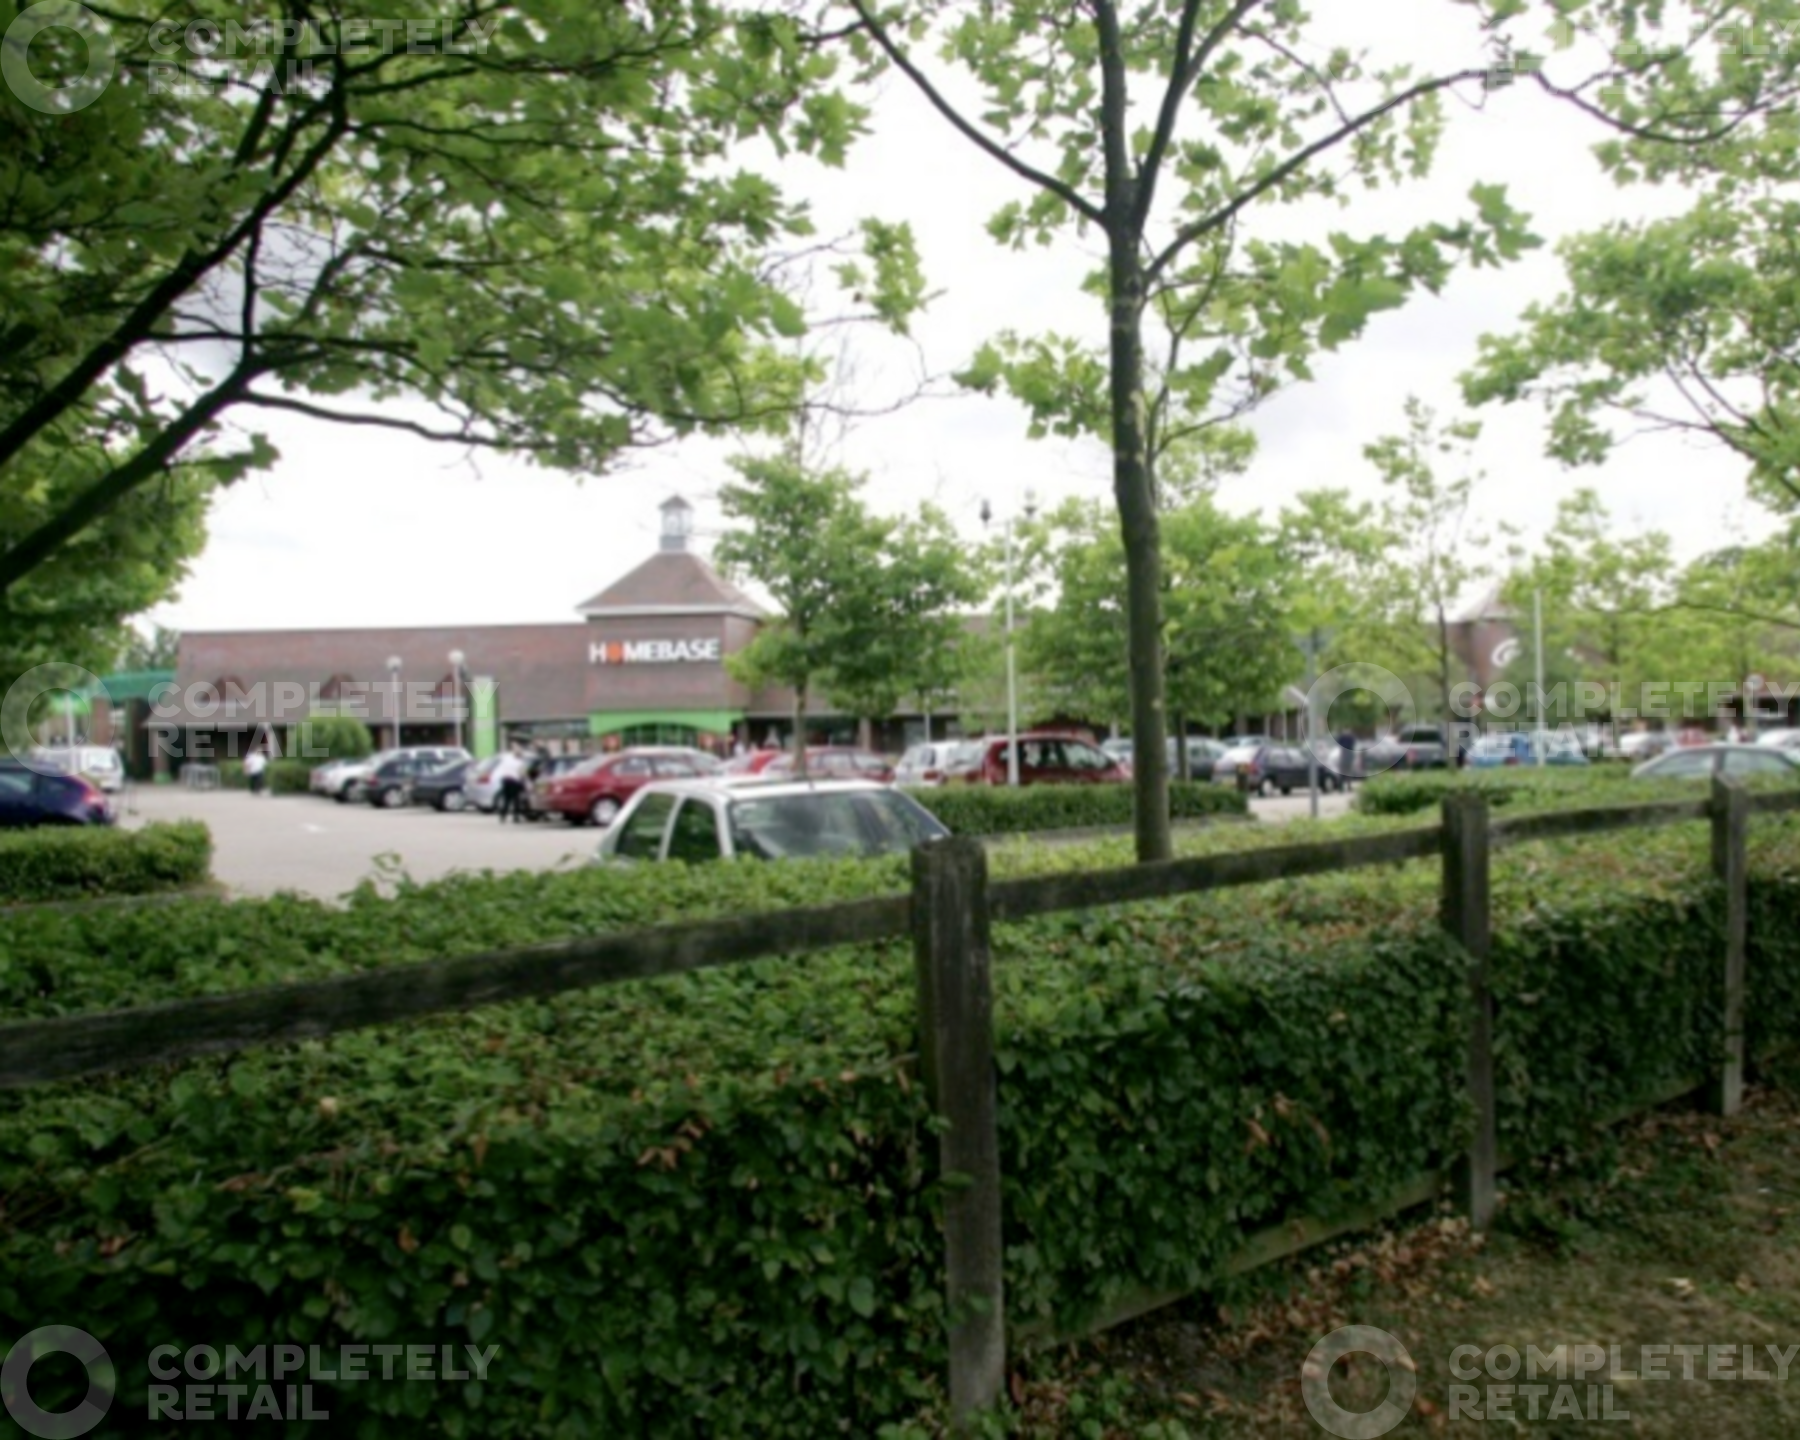 Broadbridge Heath Retail Park